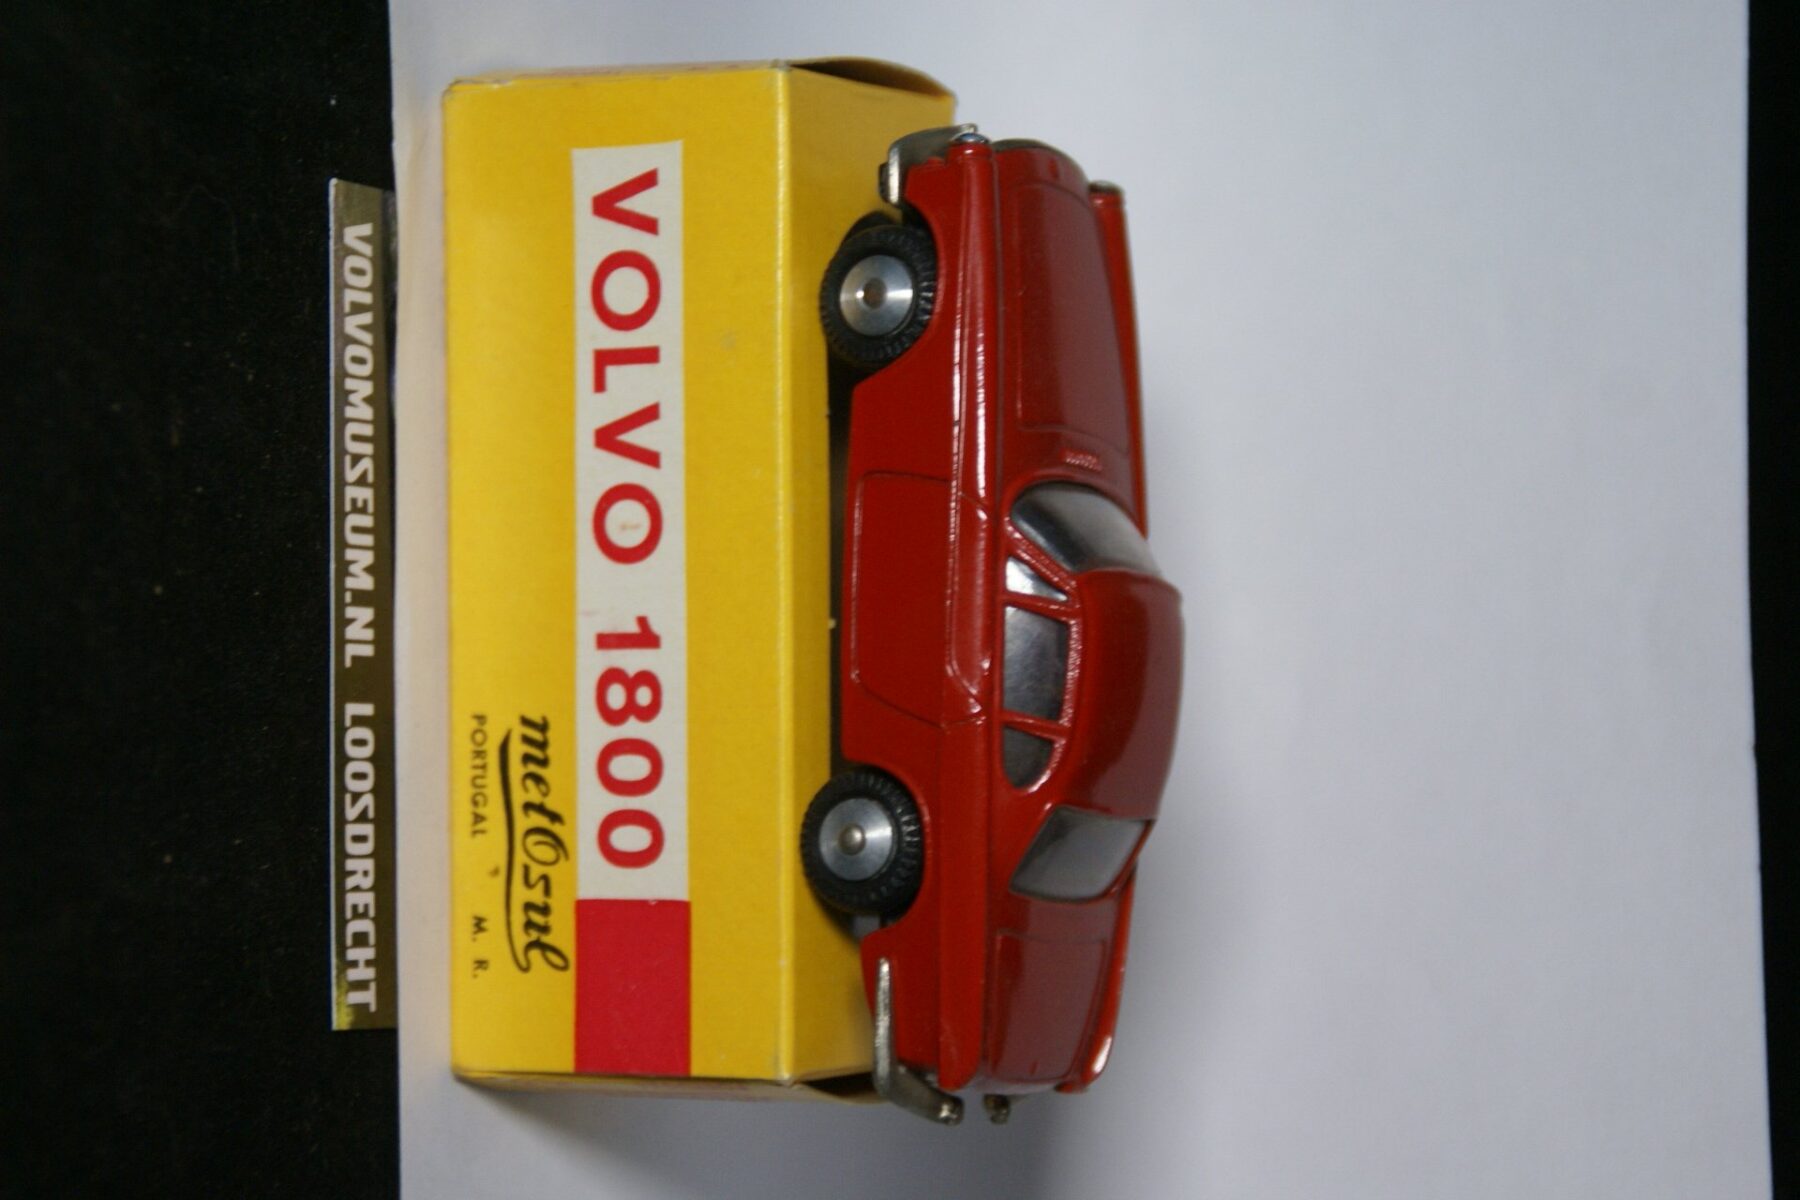 DSC02506 miniatuur Volvo 1800 rood ca 1op43 Metosul 70er jaren MB